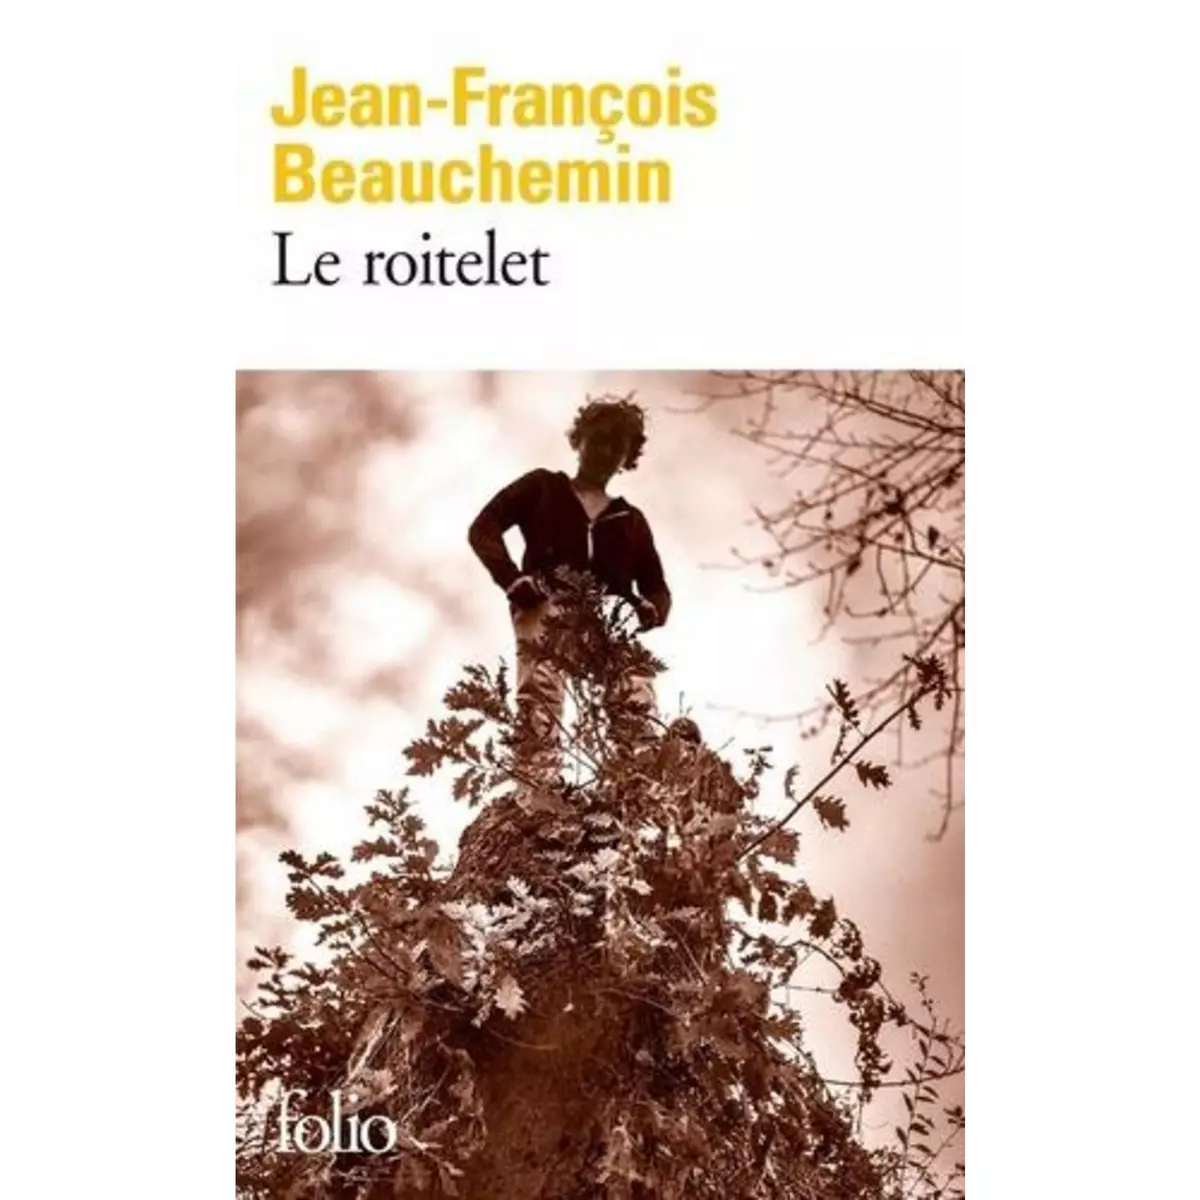  LE ROITELET, Beauchemin Jean-François